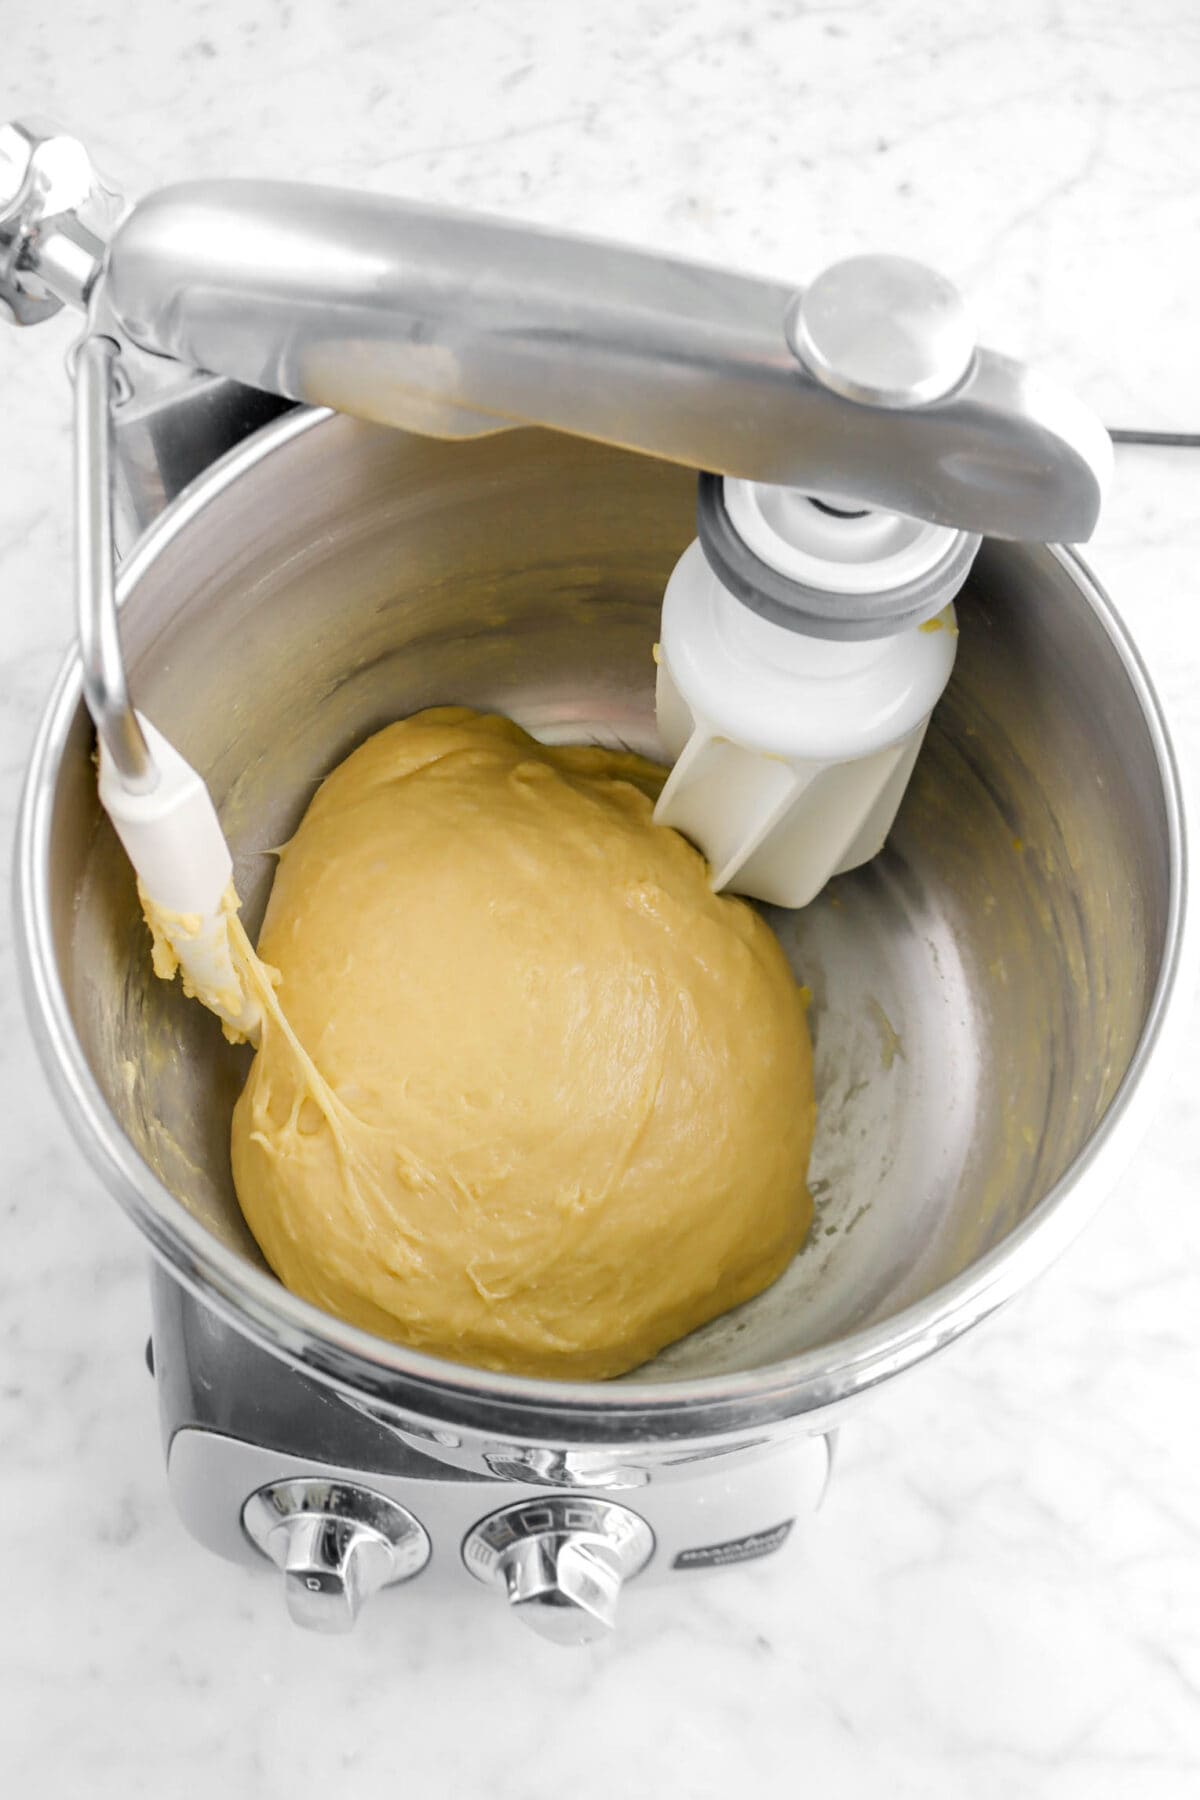 brioche dough in bowl of stand mixer